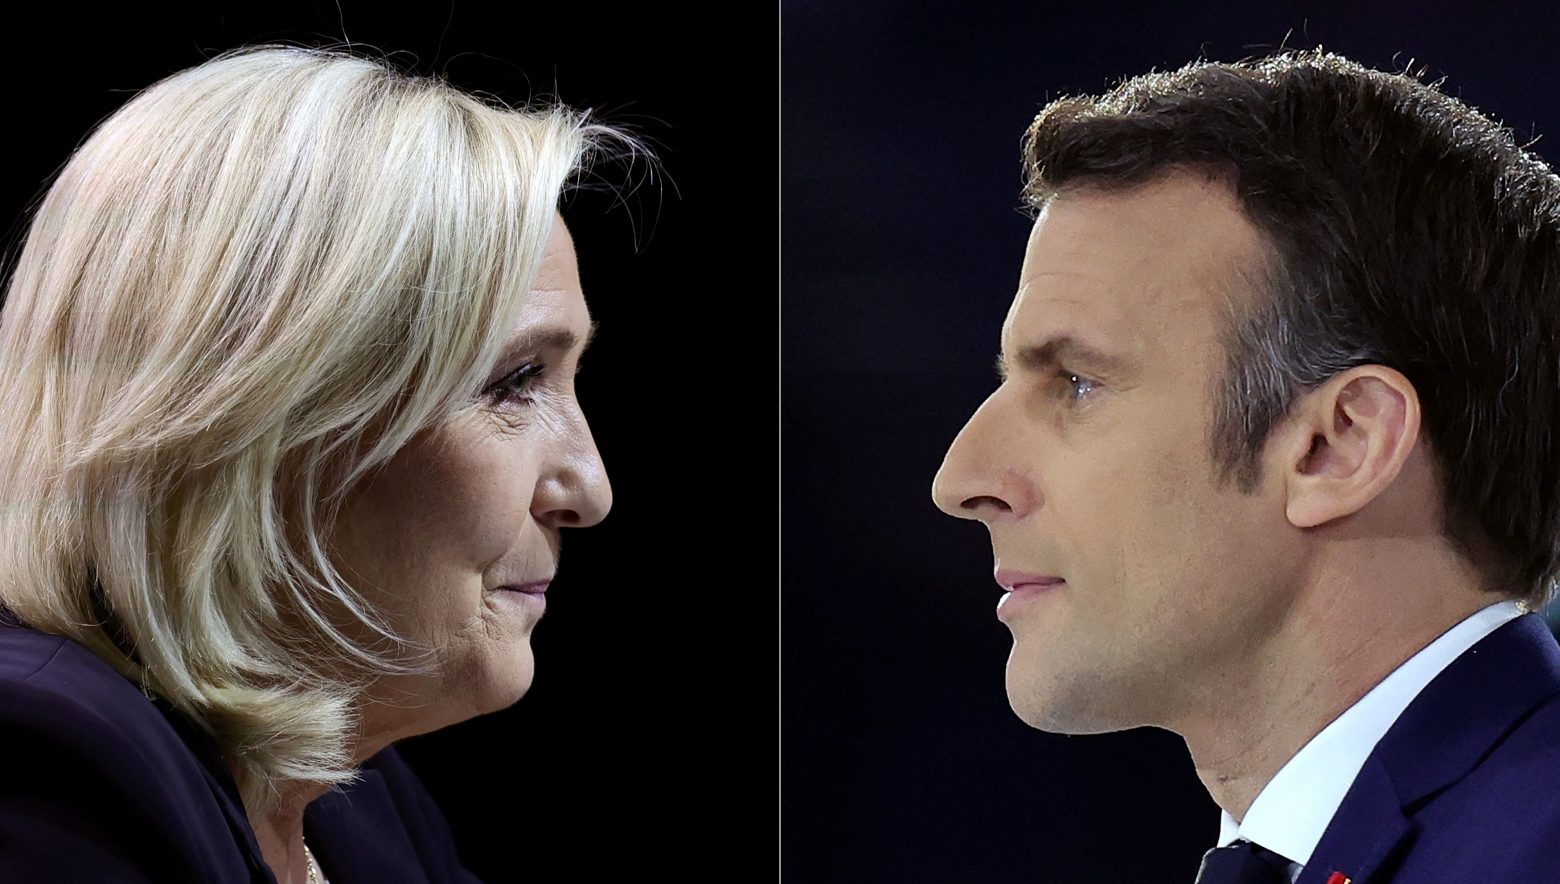 Εκλογές στη Γαλλία: Μακρόν εναντίον Λεπέν ή αλλιώς φιλοευρωπαϊστές εναντίον εθνικιστών - Τα πέντε «μαθήματα»